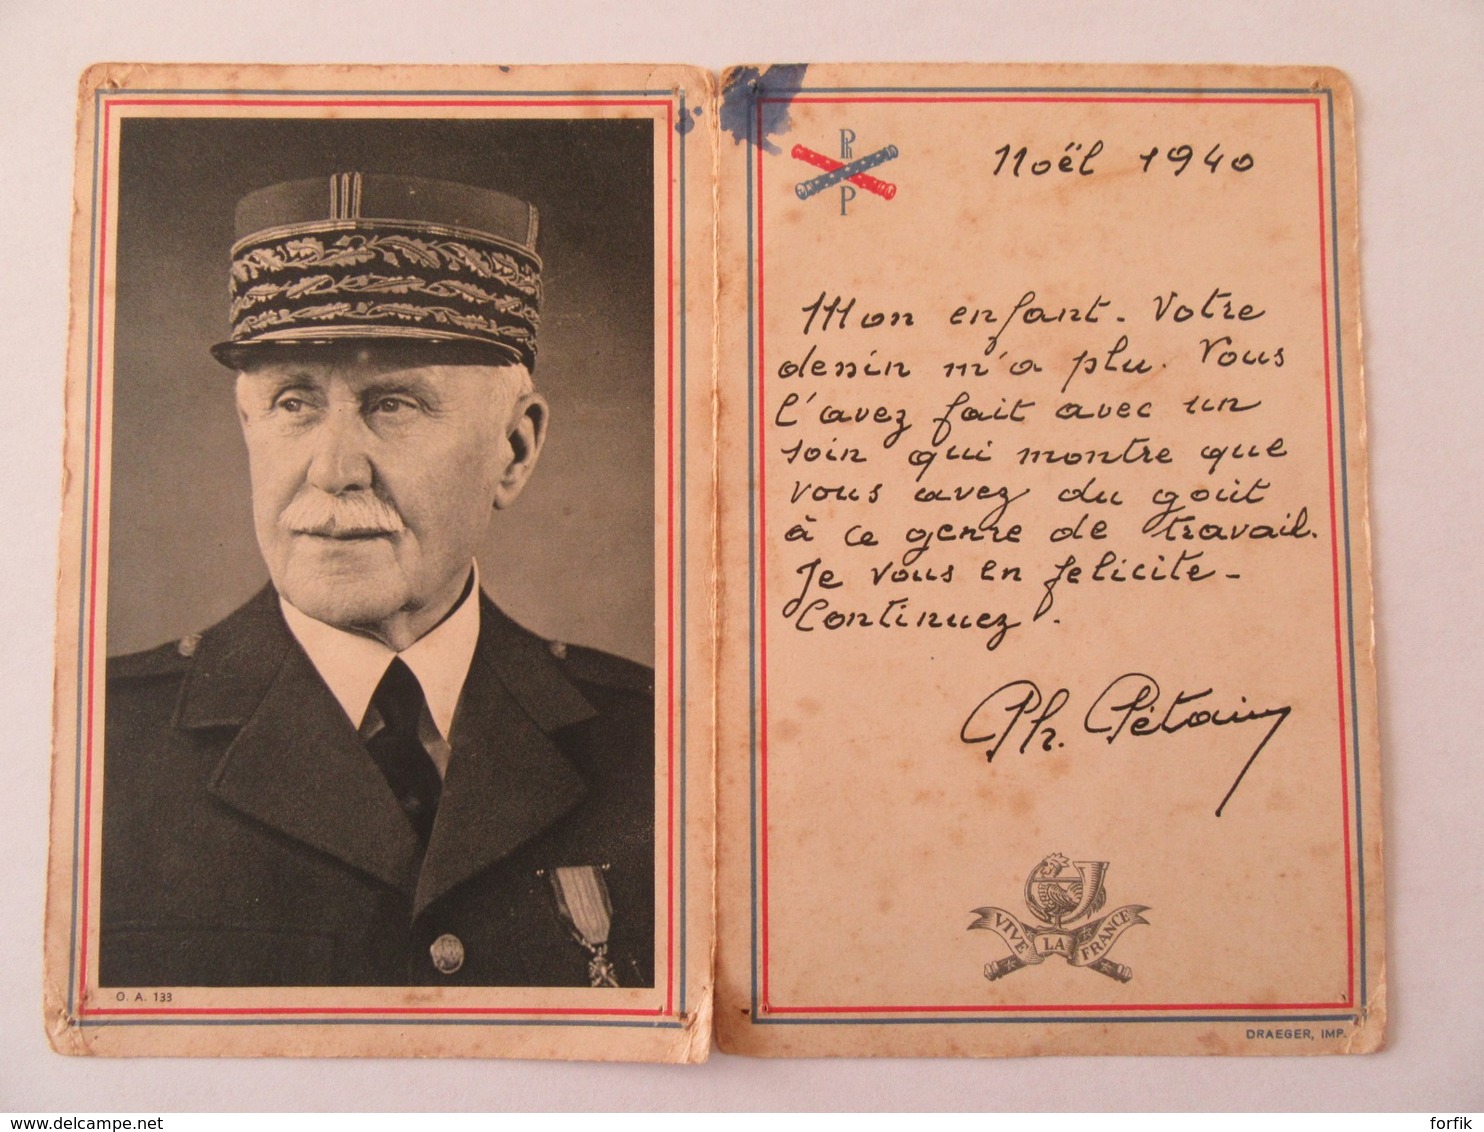 Carte Postale Ouvrante - Maréchal Pétain Avec Un Texte Imprimé Pour Noël 1940 - Propagande - Cachet Vichy 1941 - Hommes Politiques & Militaires